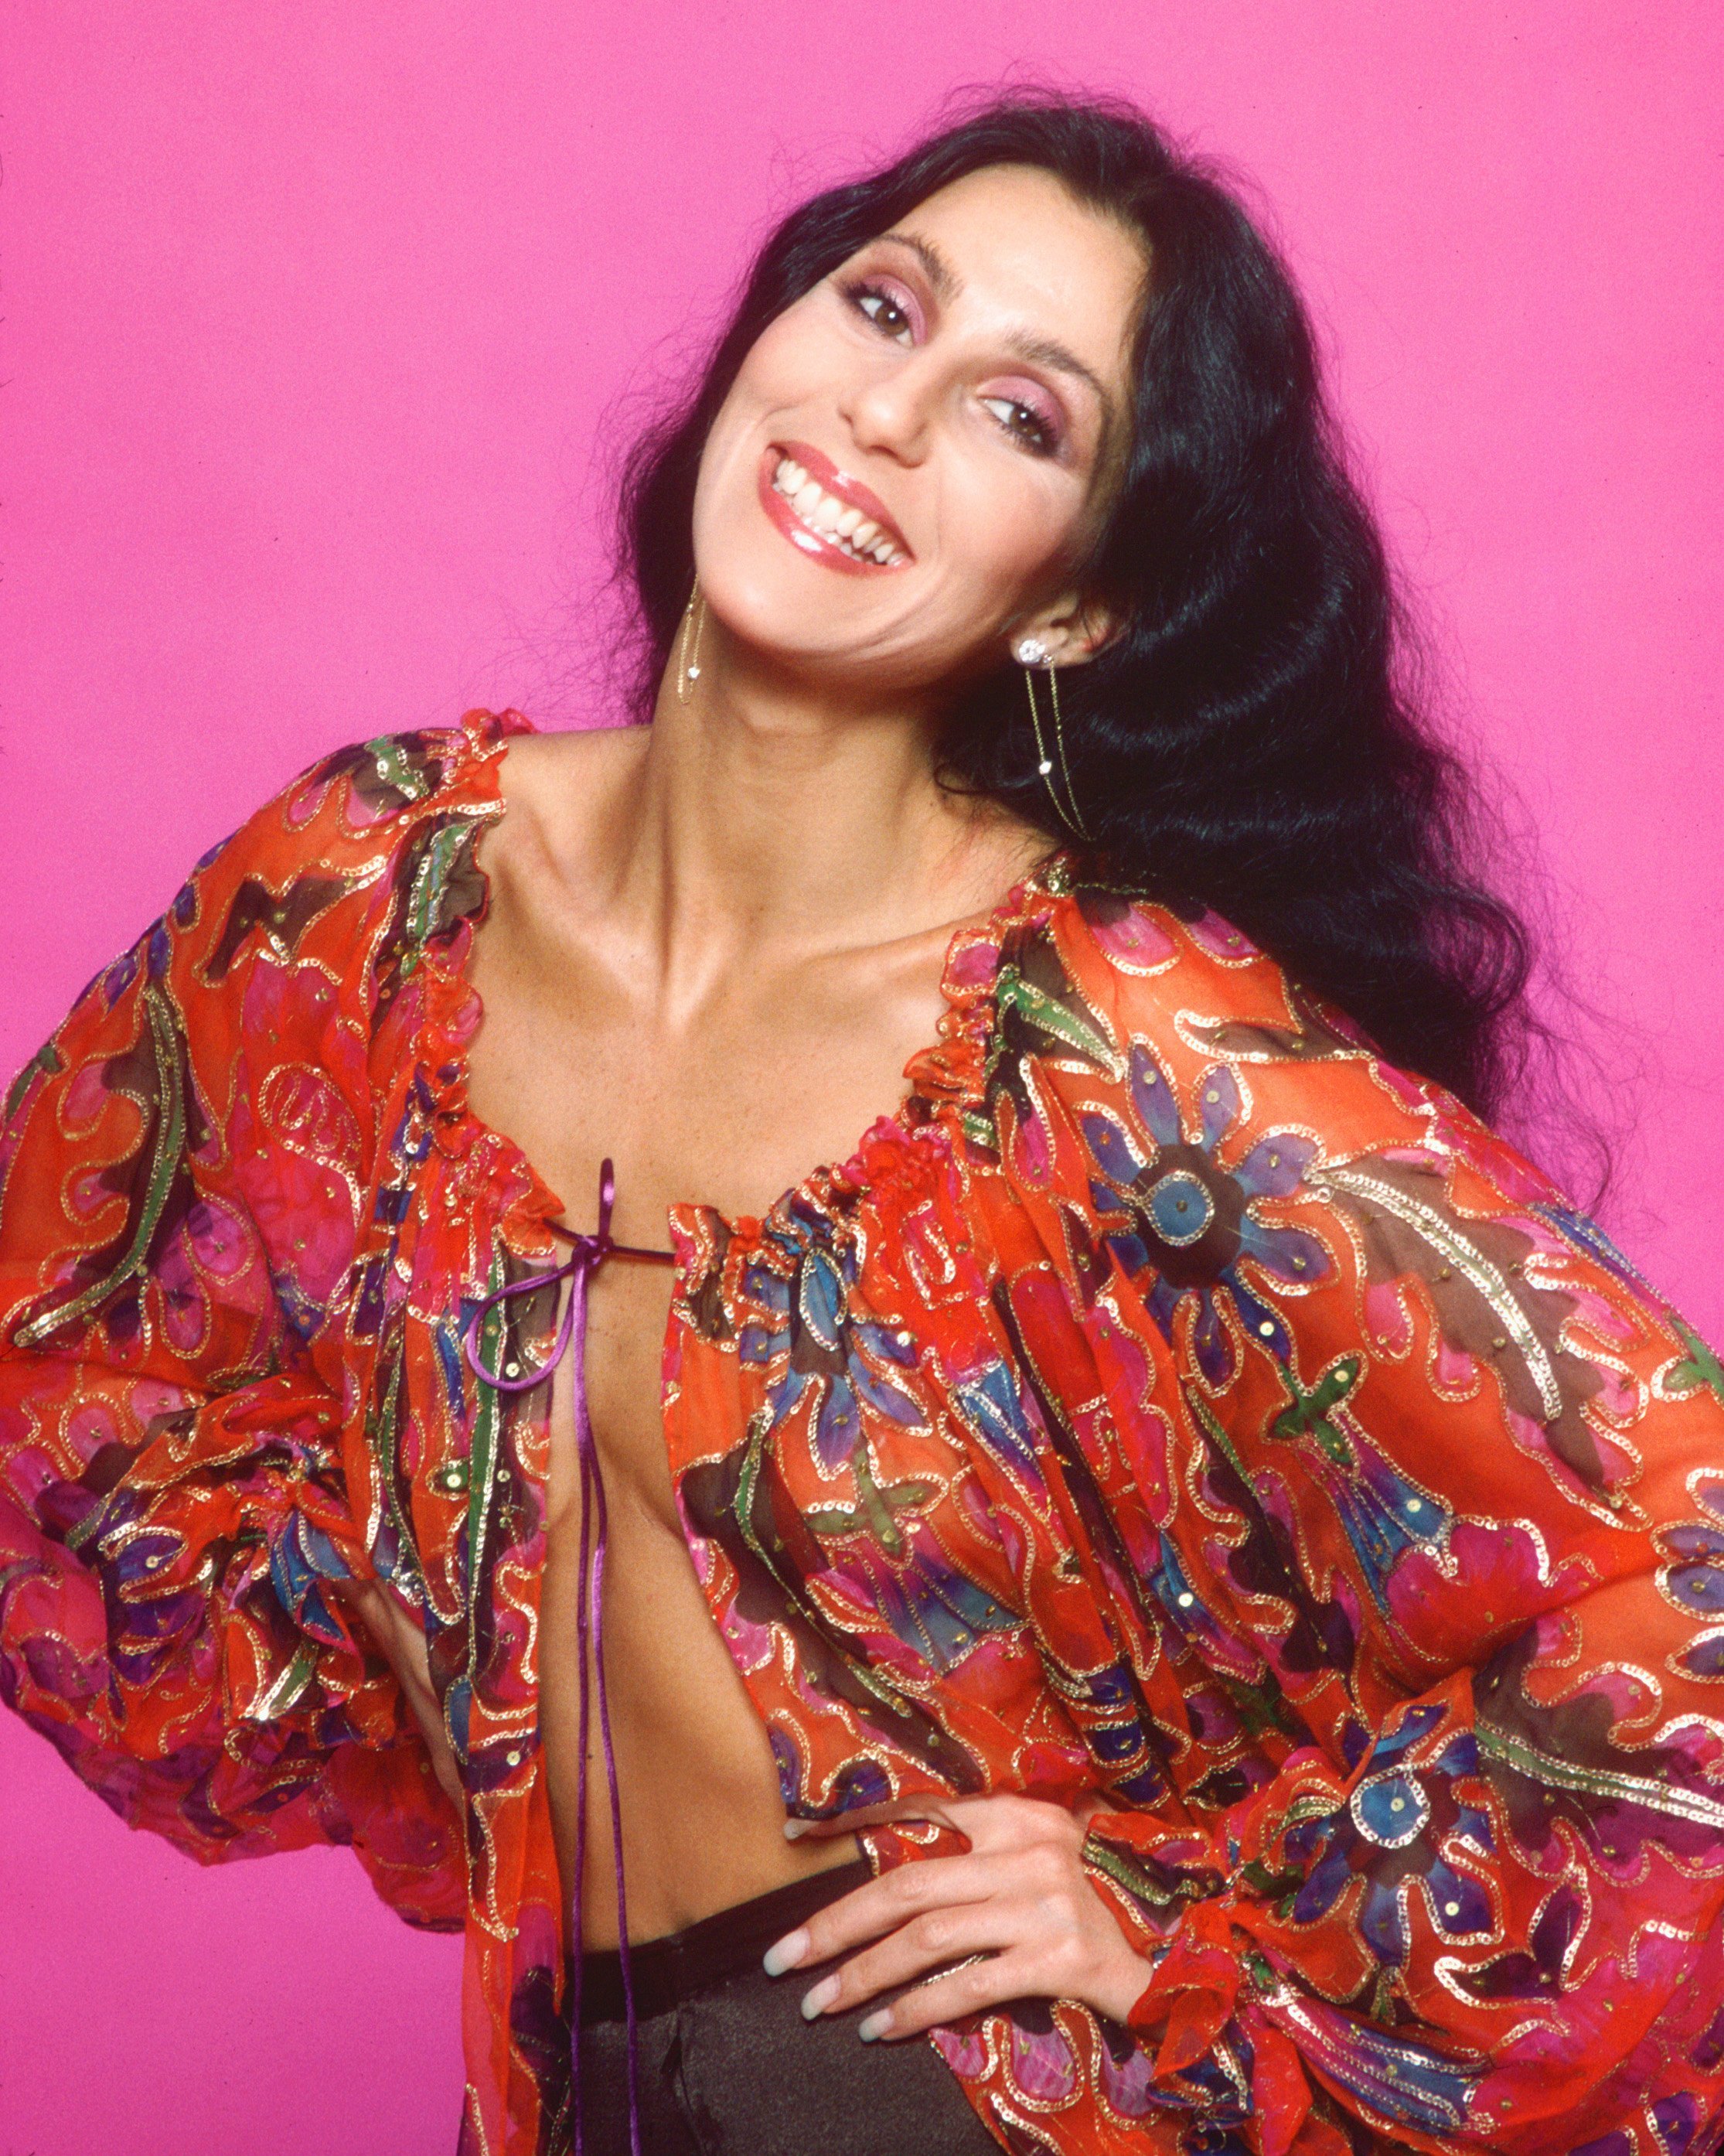 Cher en Los Ángeles, California, el 21 de marzo de 1977 | Foto: Getty Images